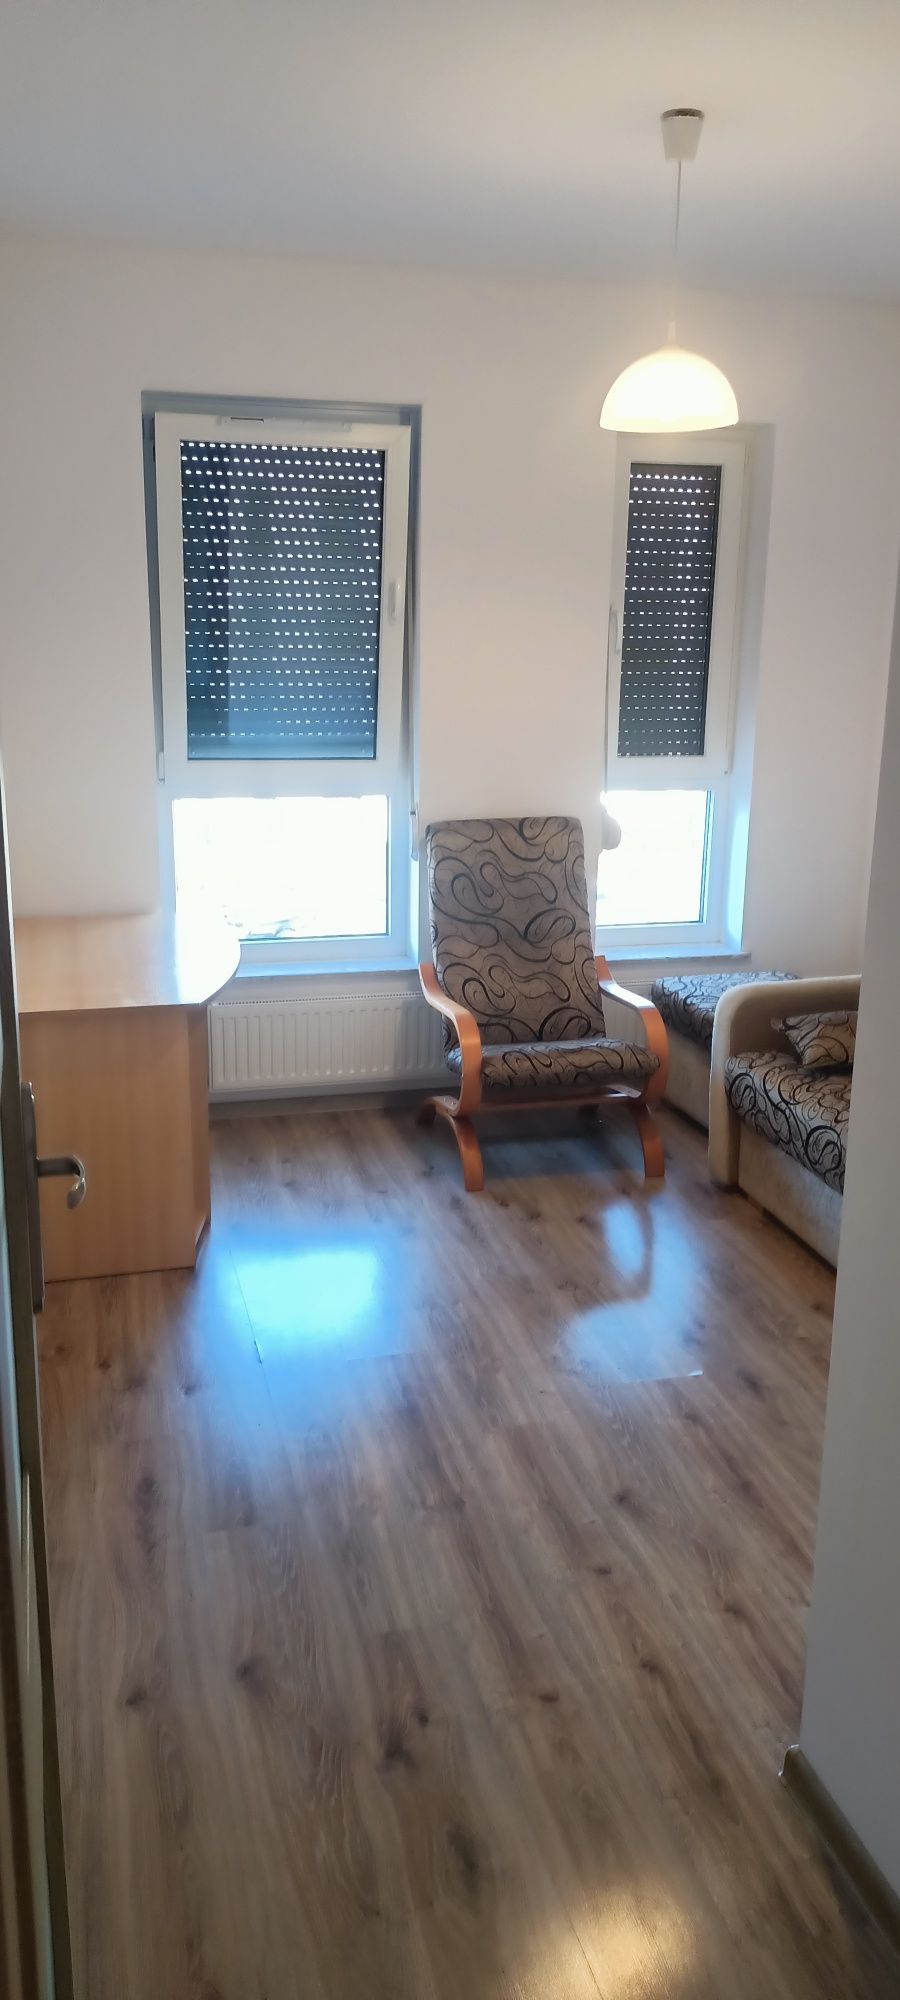 Mieszkanie na wynajem-Kostrzyn ul. Warszawska 53 m2+komórka lokatorska